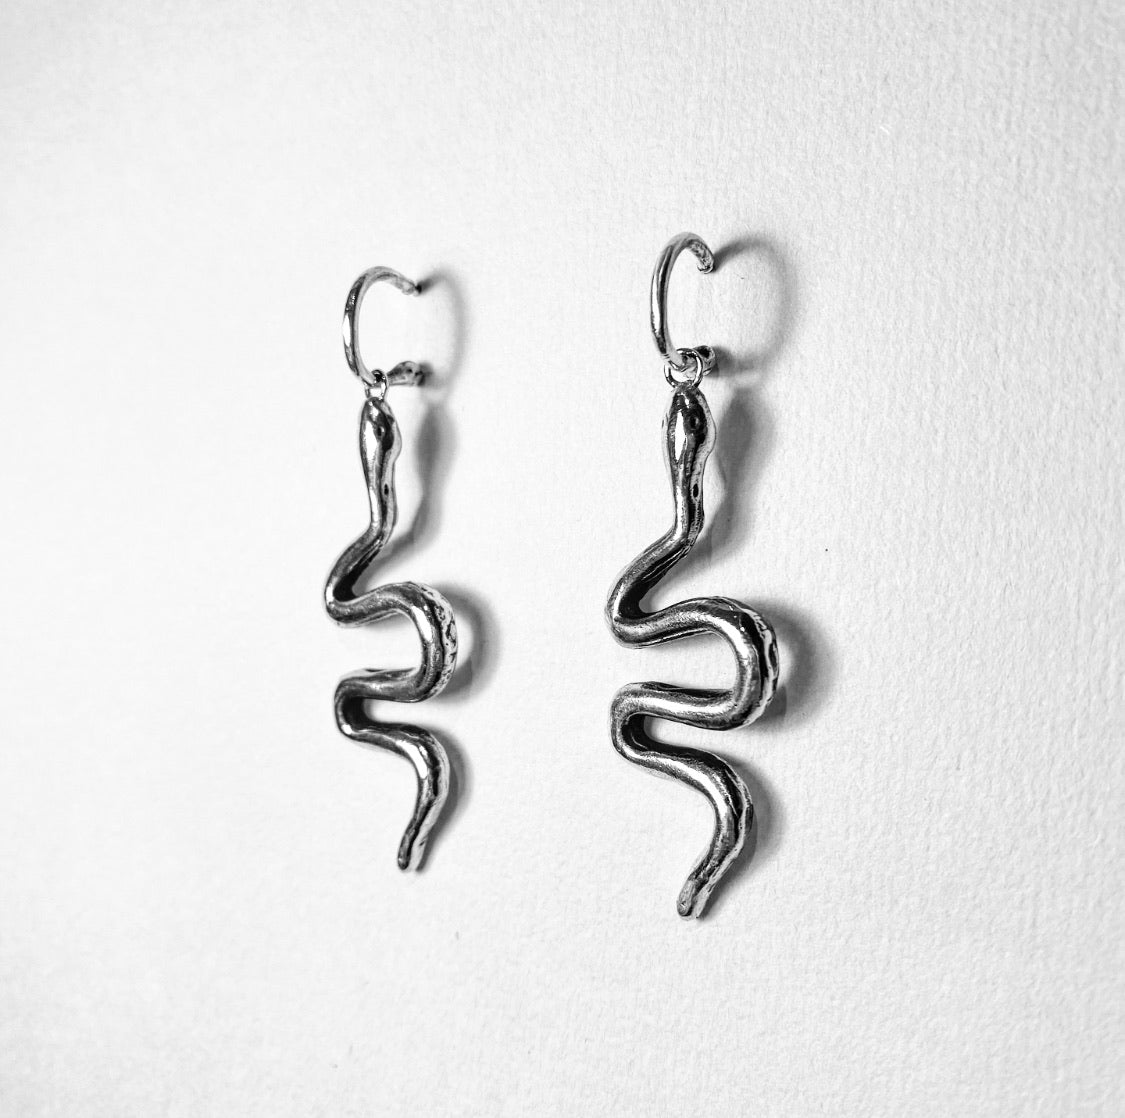 Snake charmer earrings